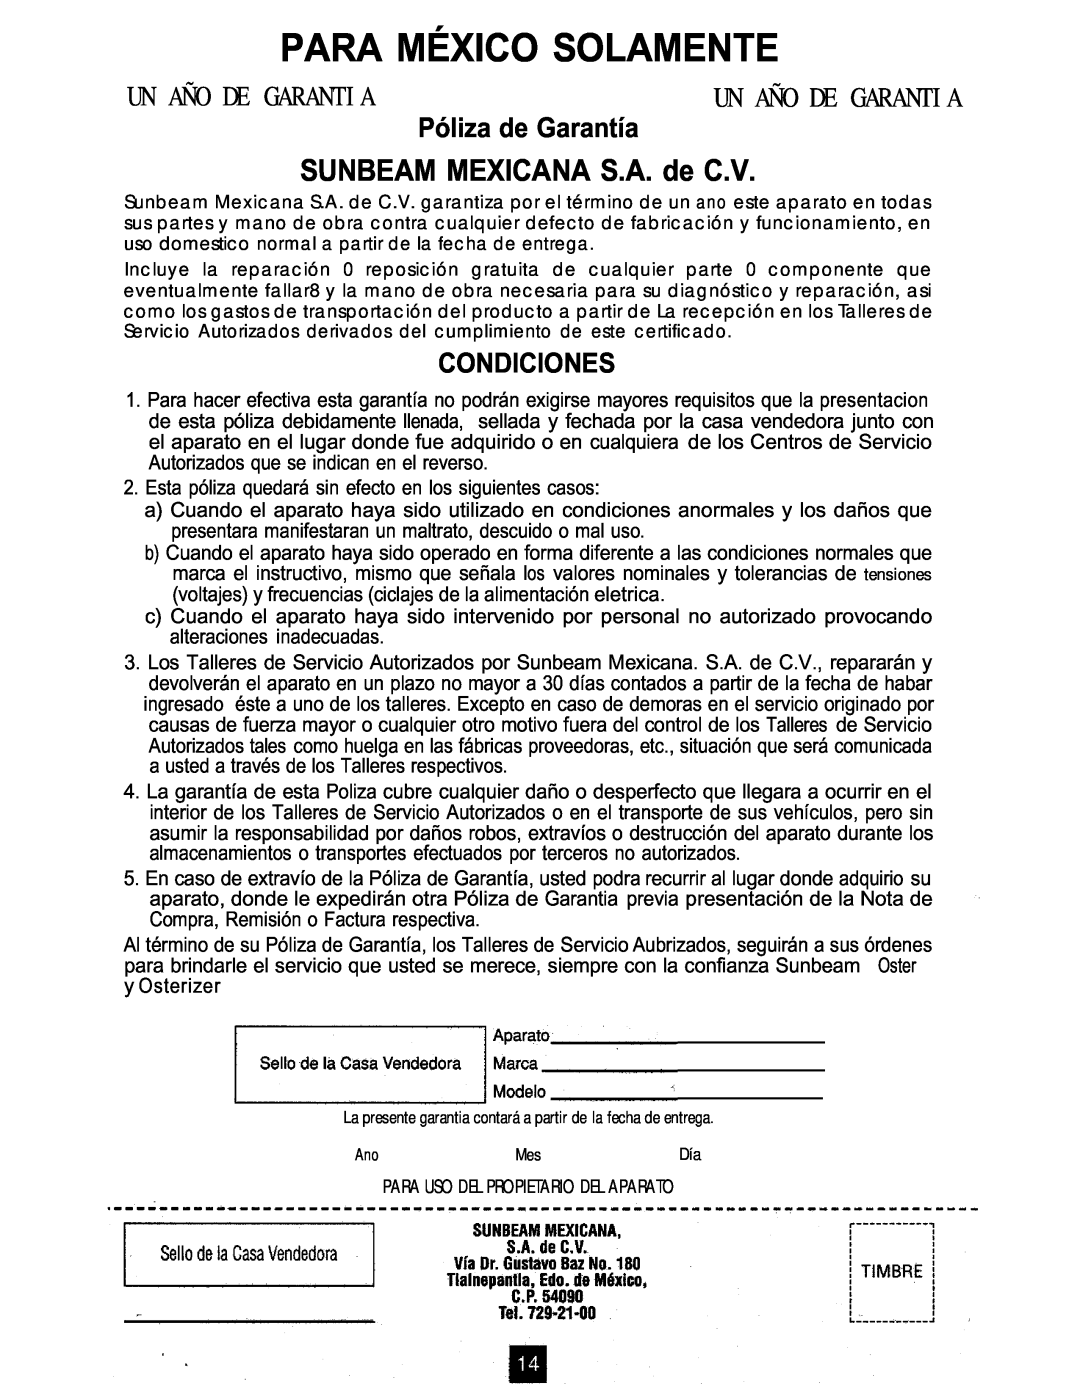 Oster TOASTERS SUNBEAM MEXICANA S.A. de C.V, Para México Solamente, Un Año De Garantia, Póliza de Garantía, Condiciones 